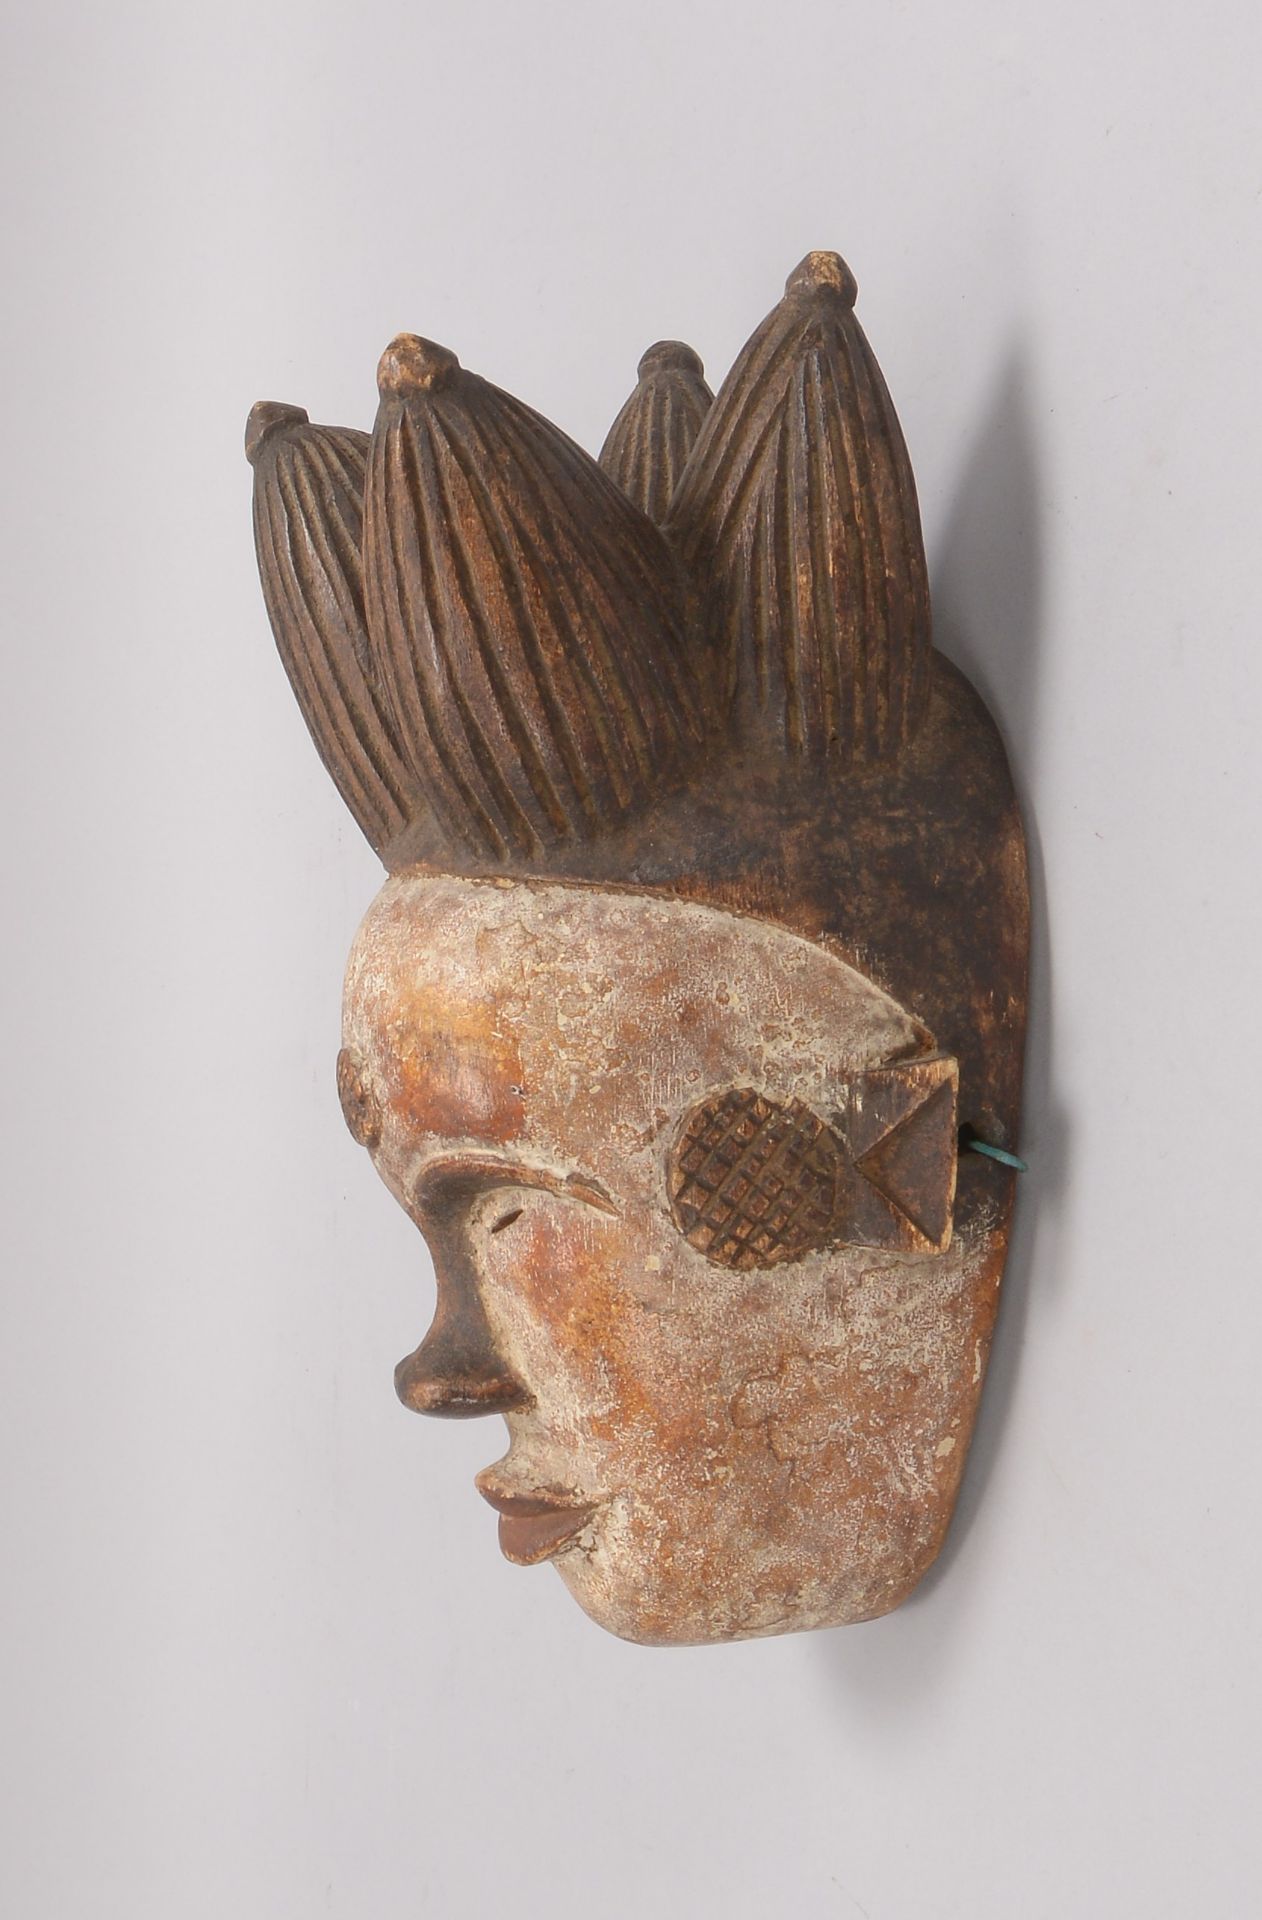 Ritualmaske (Kamerun/Afrika), Holz handgeschnitzt, mit Resten von weißer Fassung; Länge 31 cm - Bild 2 aus 2